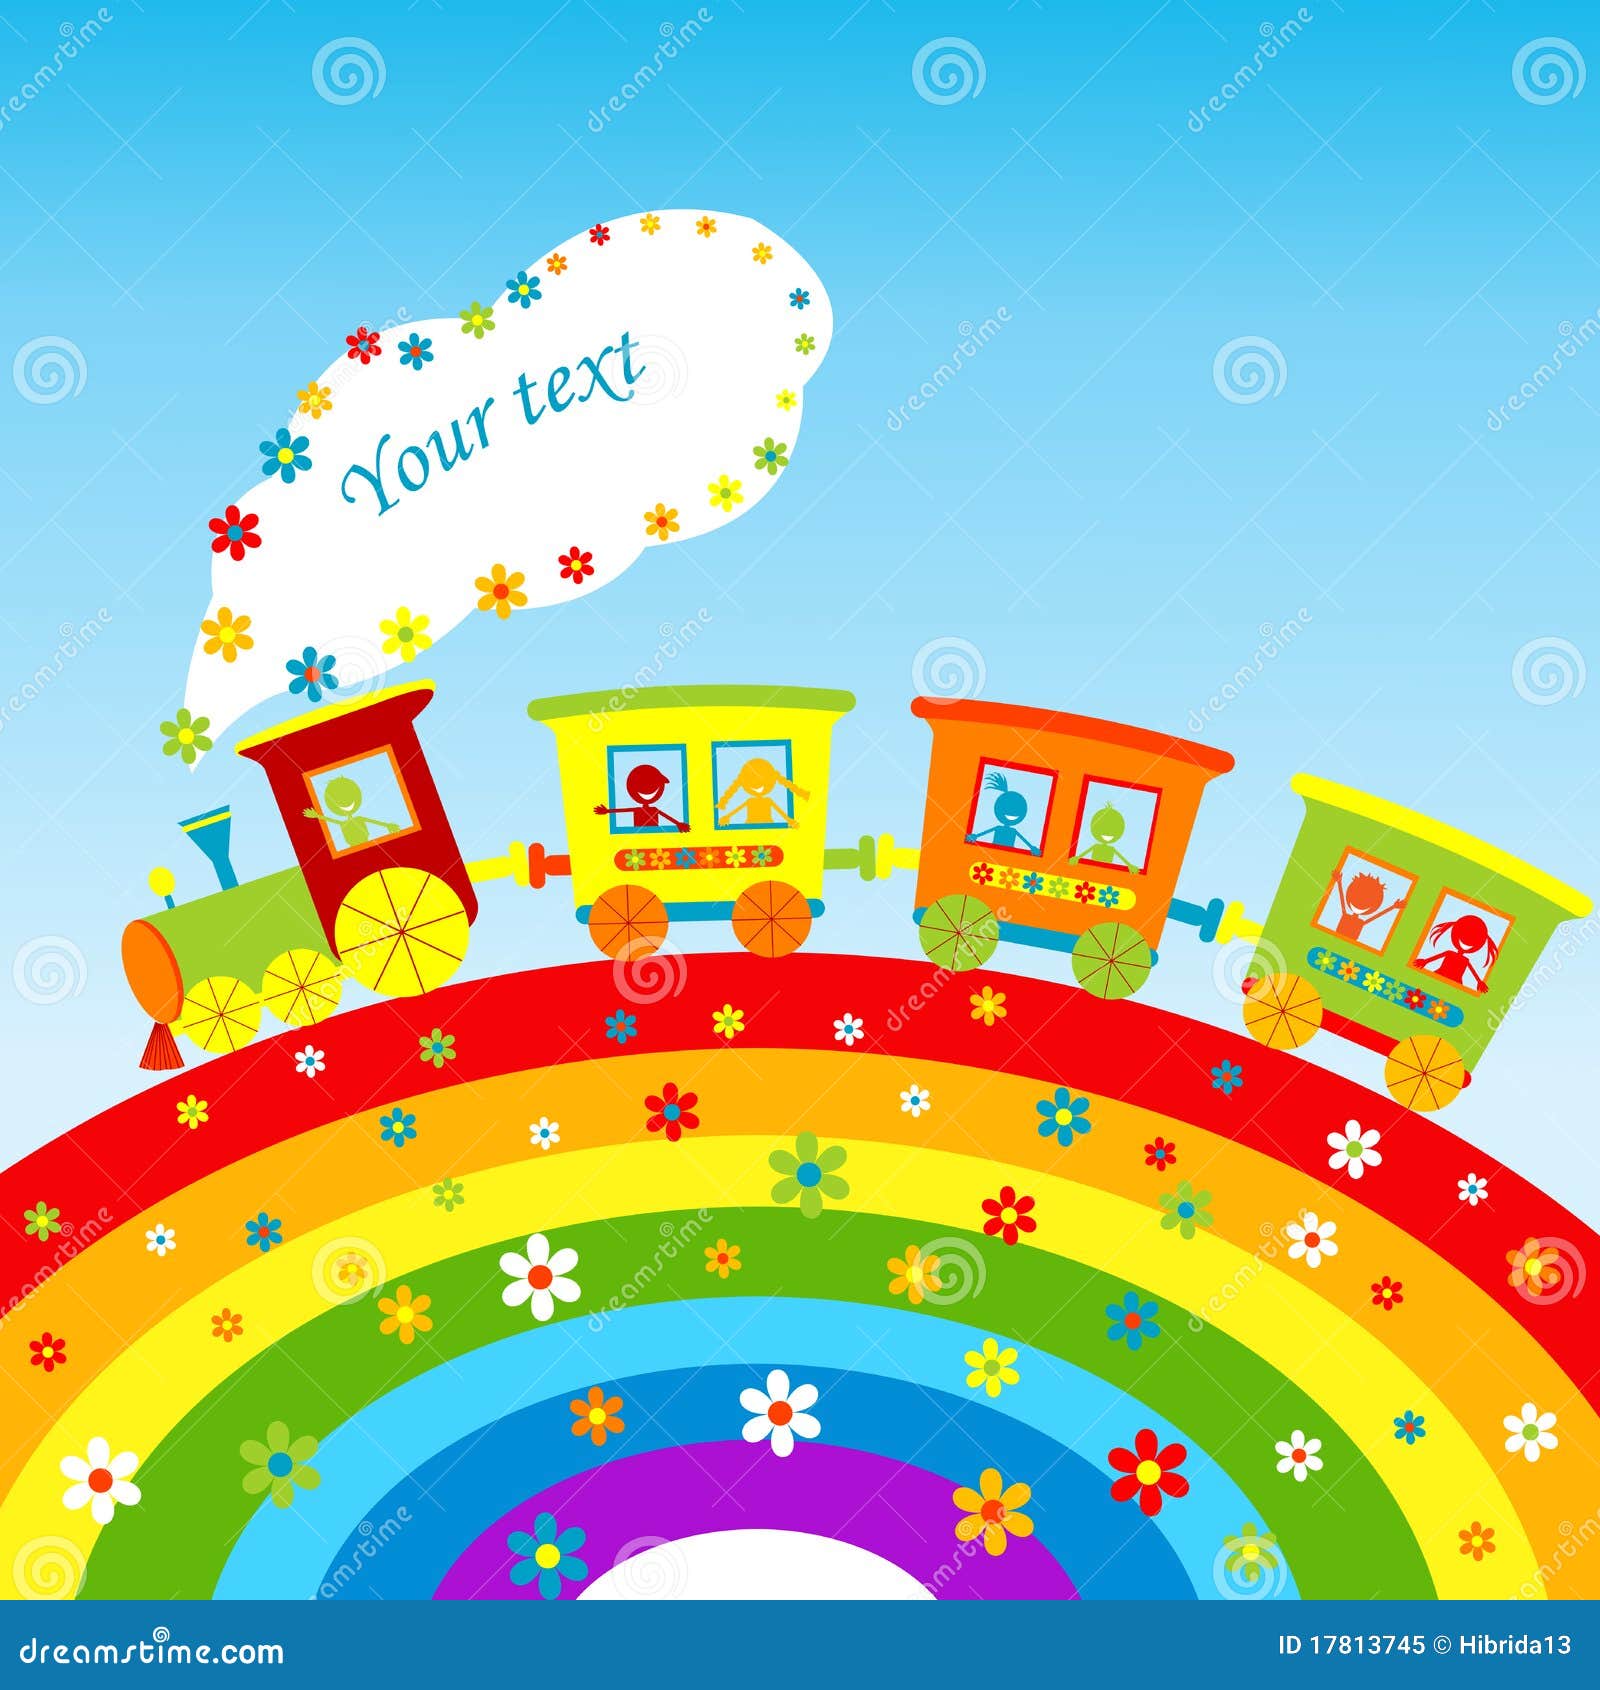 Cartoon Train Rainbow Stock Illustrations 198 Cartoon Train Rainbow Stock Illustrations Vectors Clipart Dreamstime